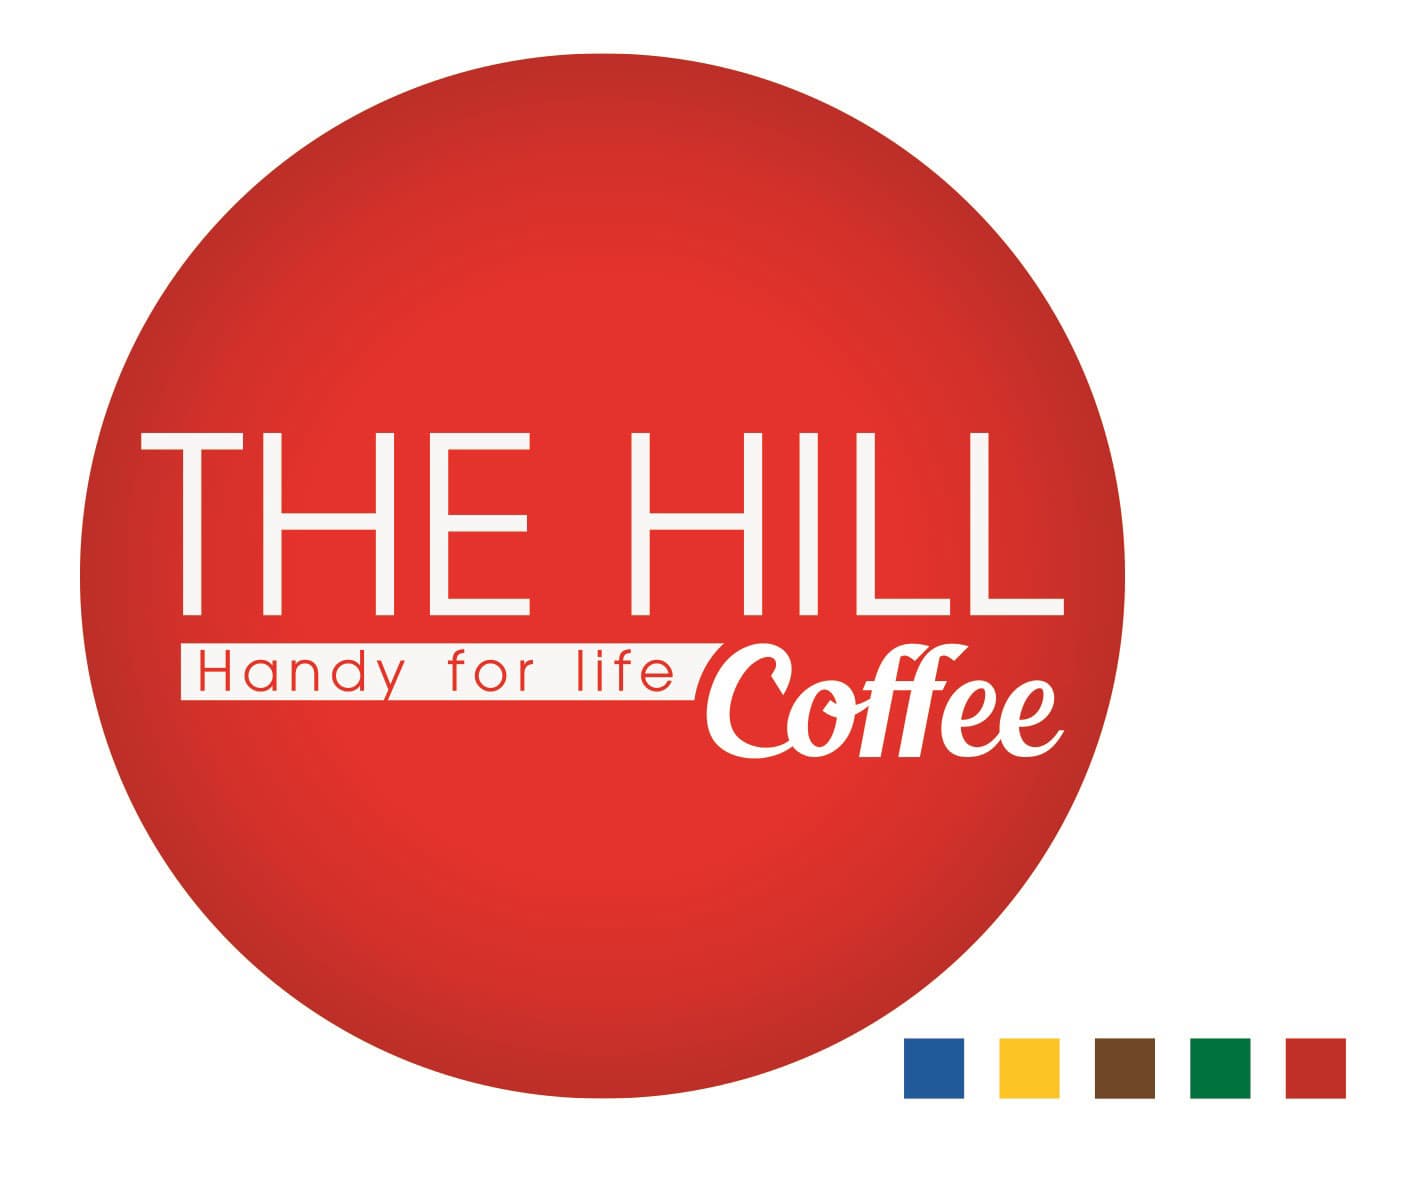 THE HILL VIETNAM COFFEE CO., LTD